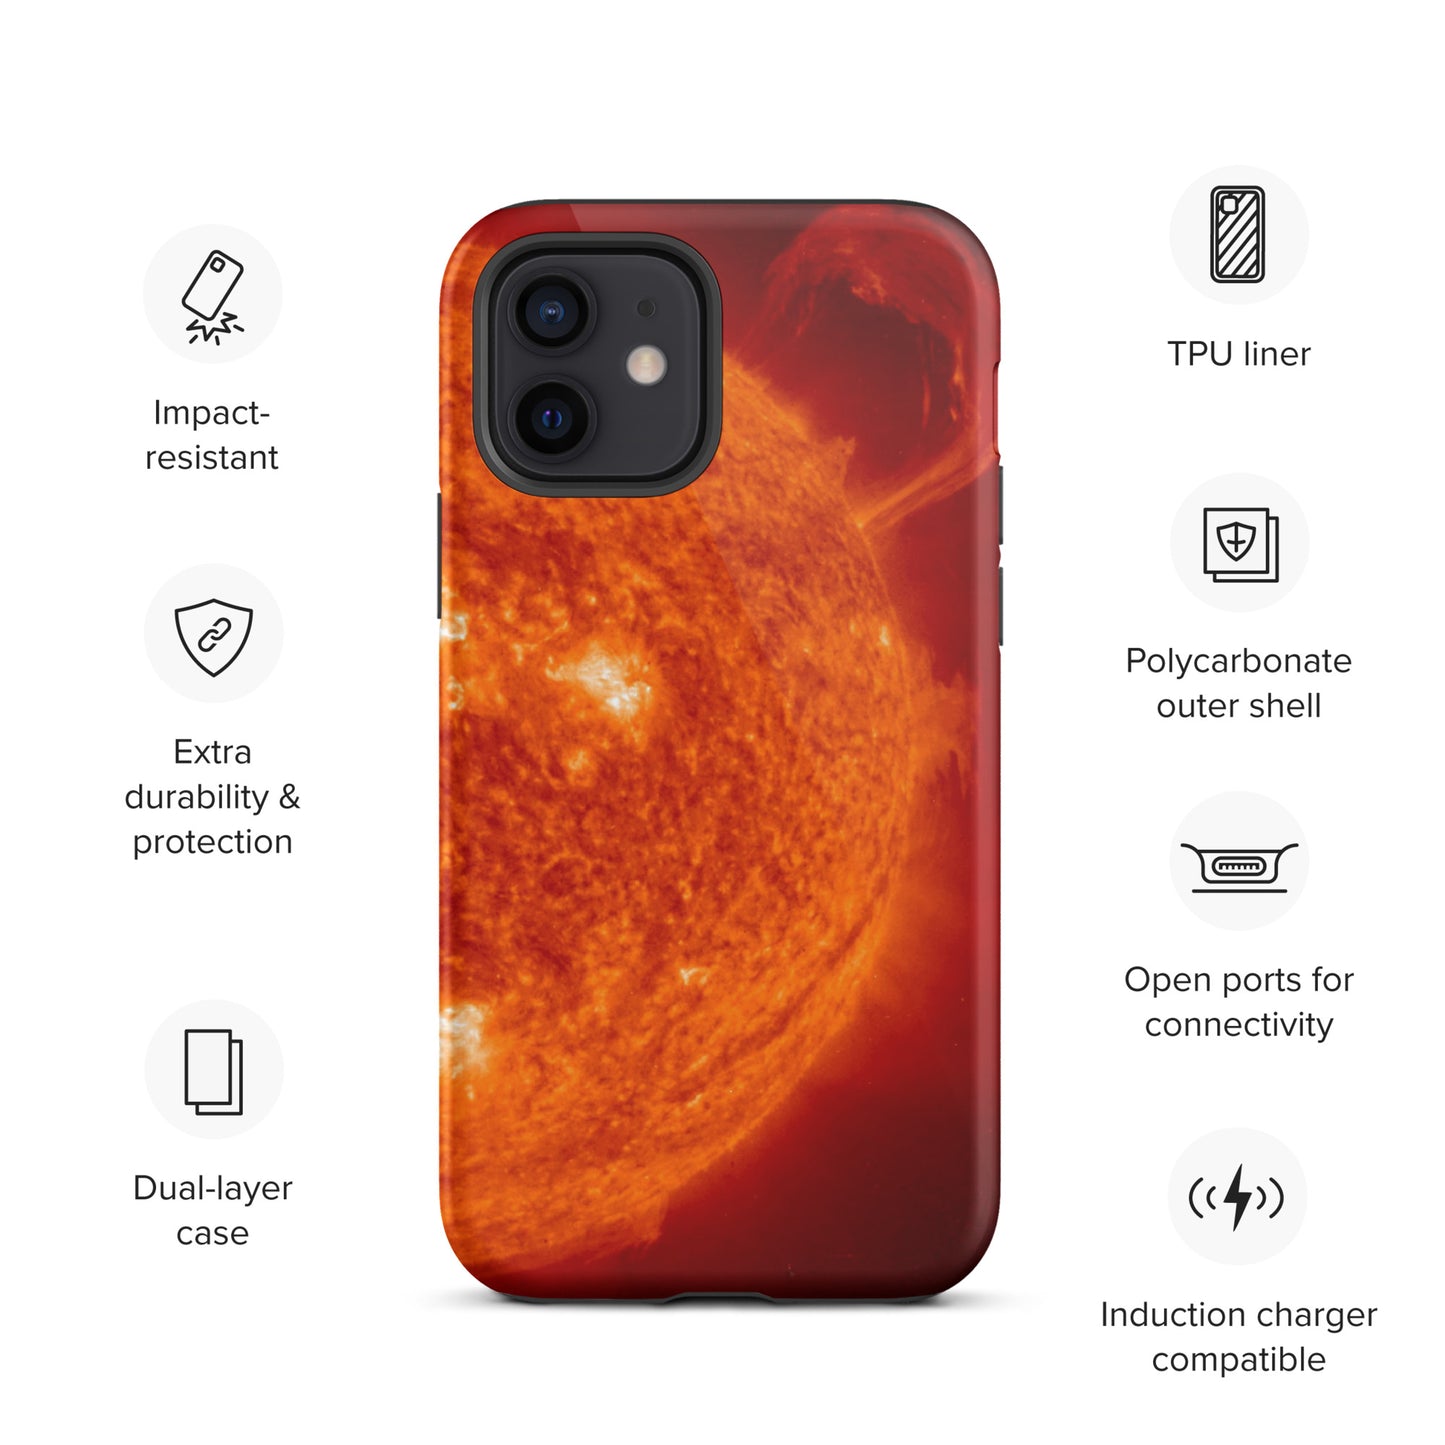 Sun - Nova - Tough iPhone case